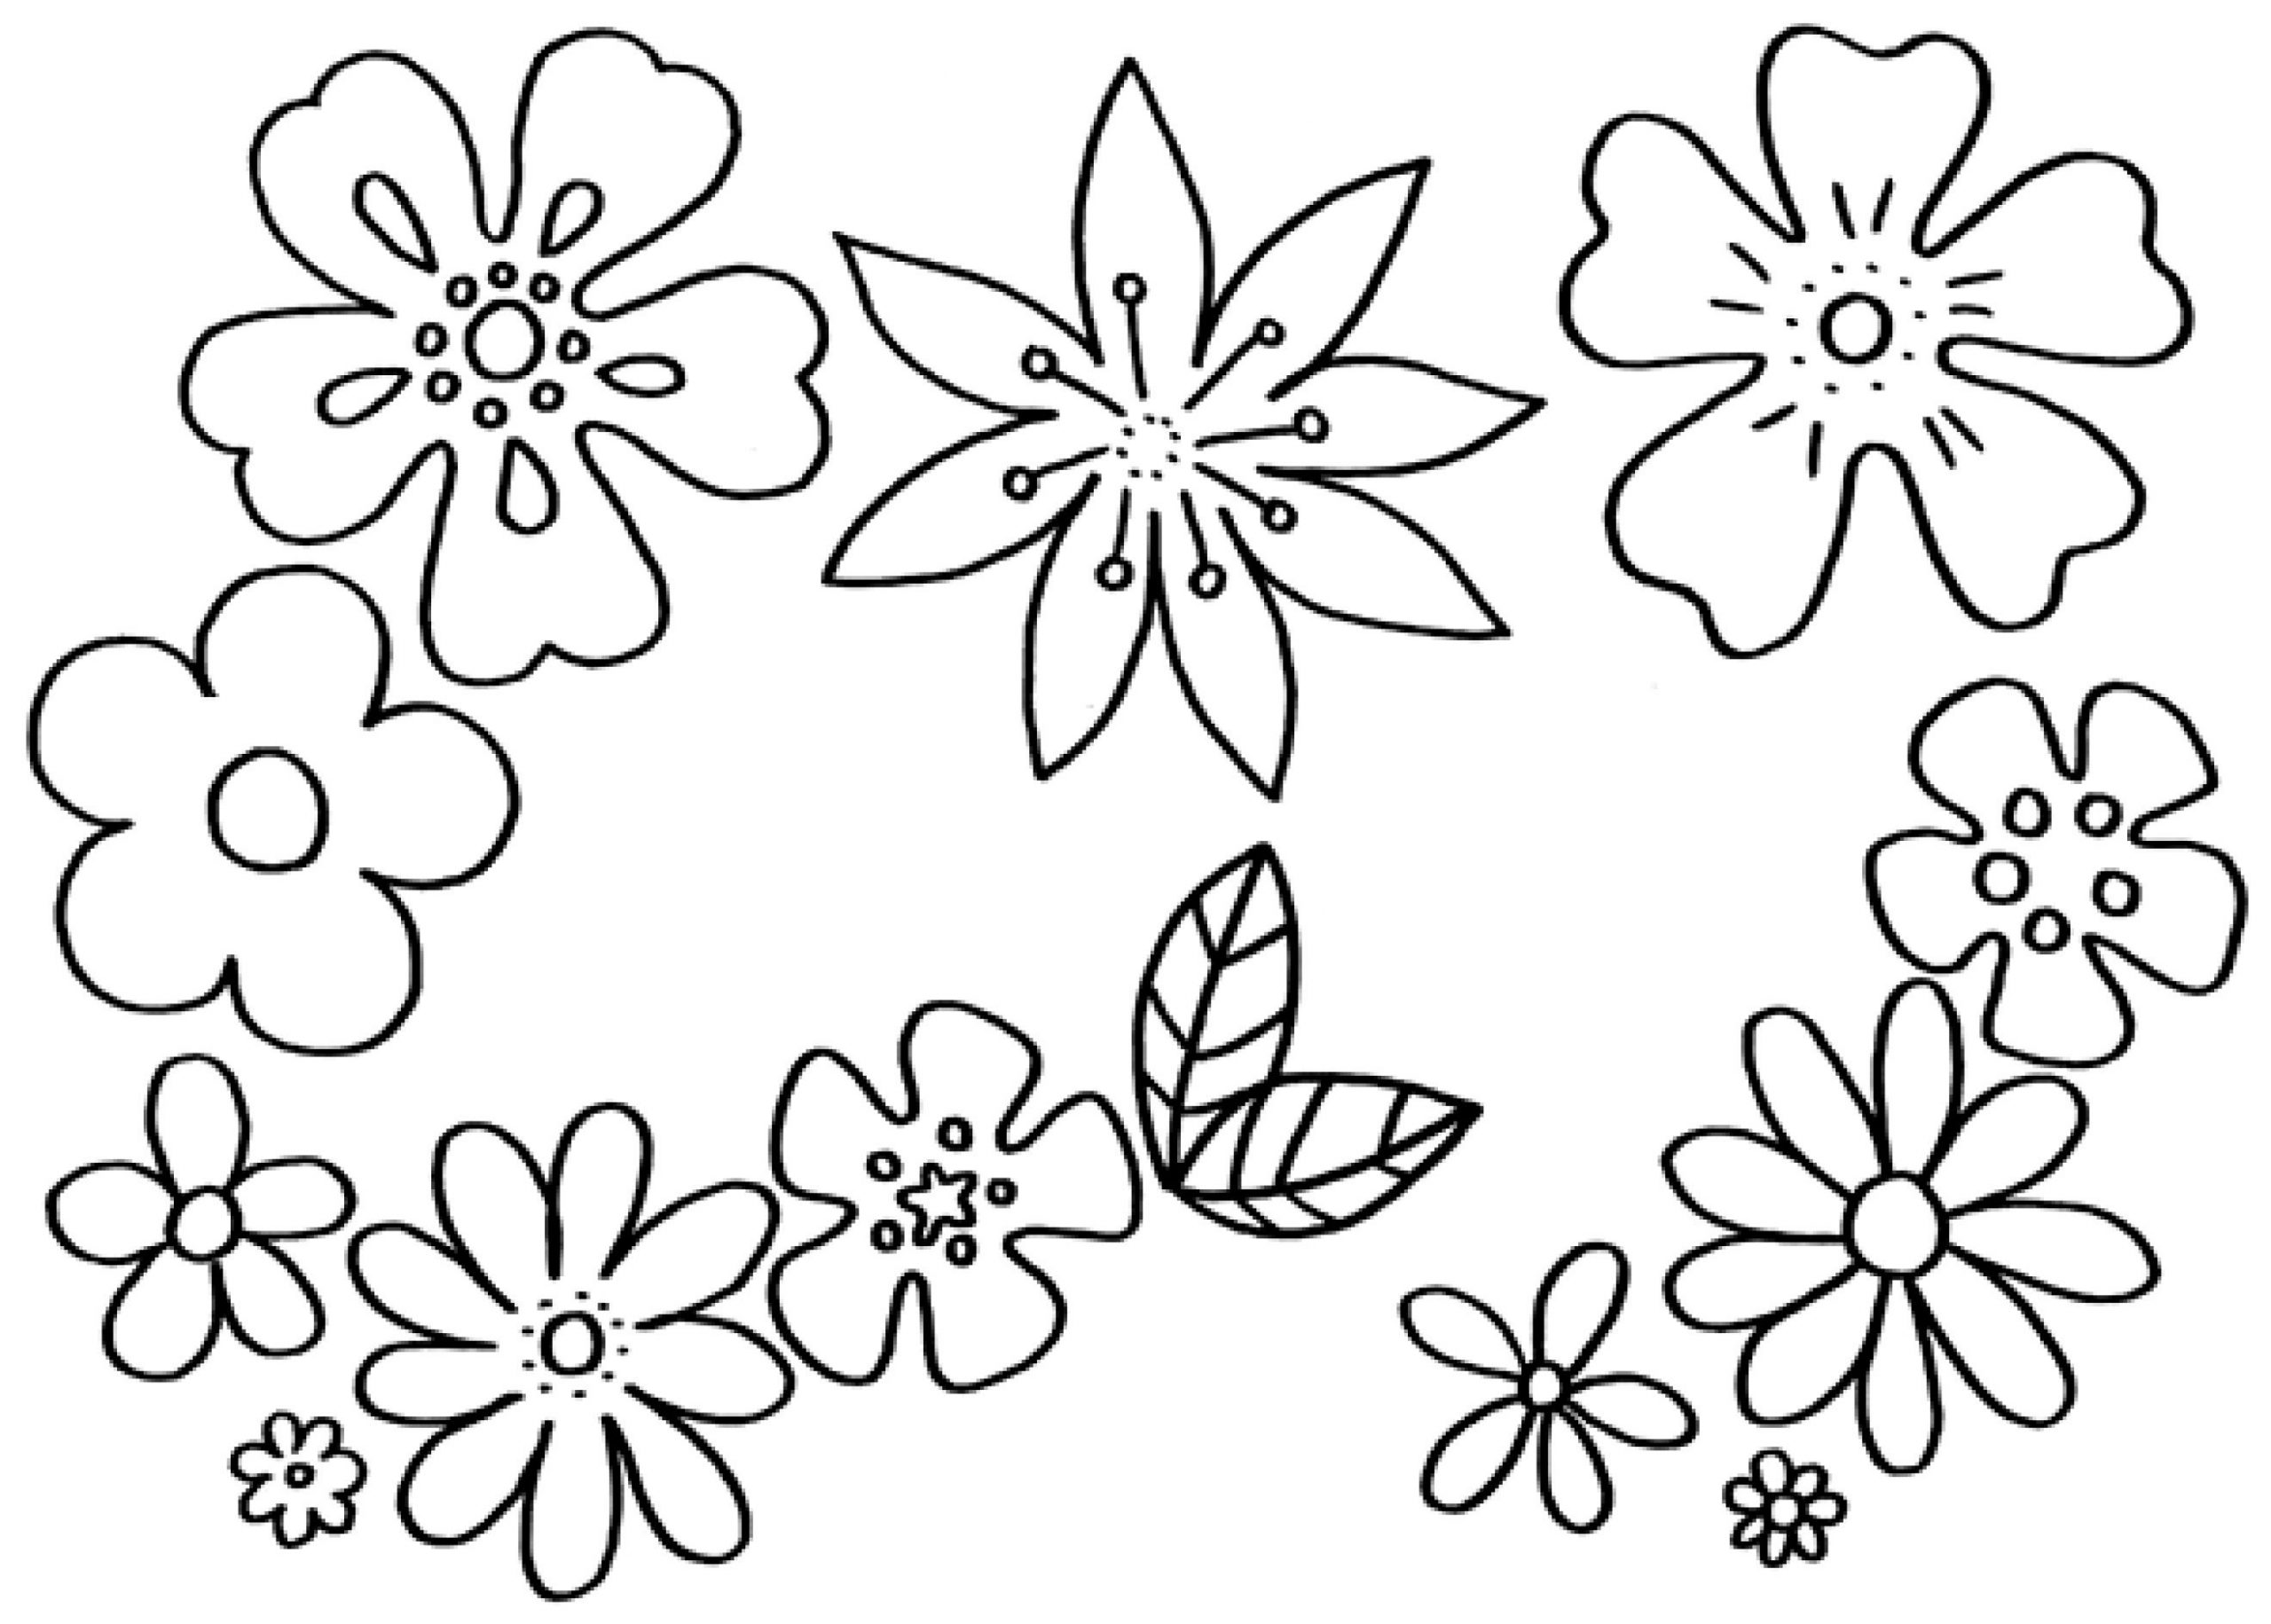 Malvorlagen Blumen - Kostenlose Ausmalbilder | Mytoys Blog für Blume Ausmalen